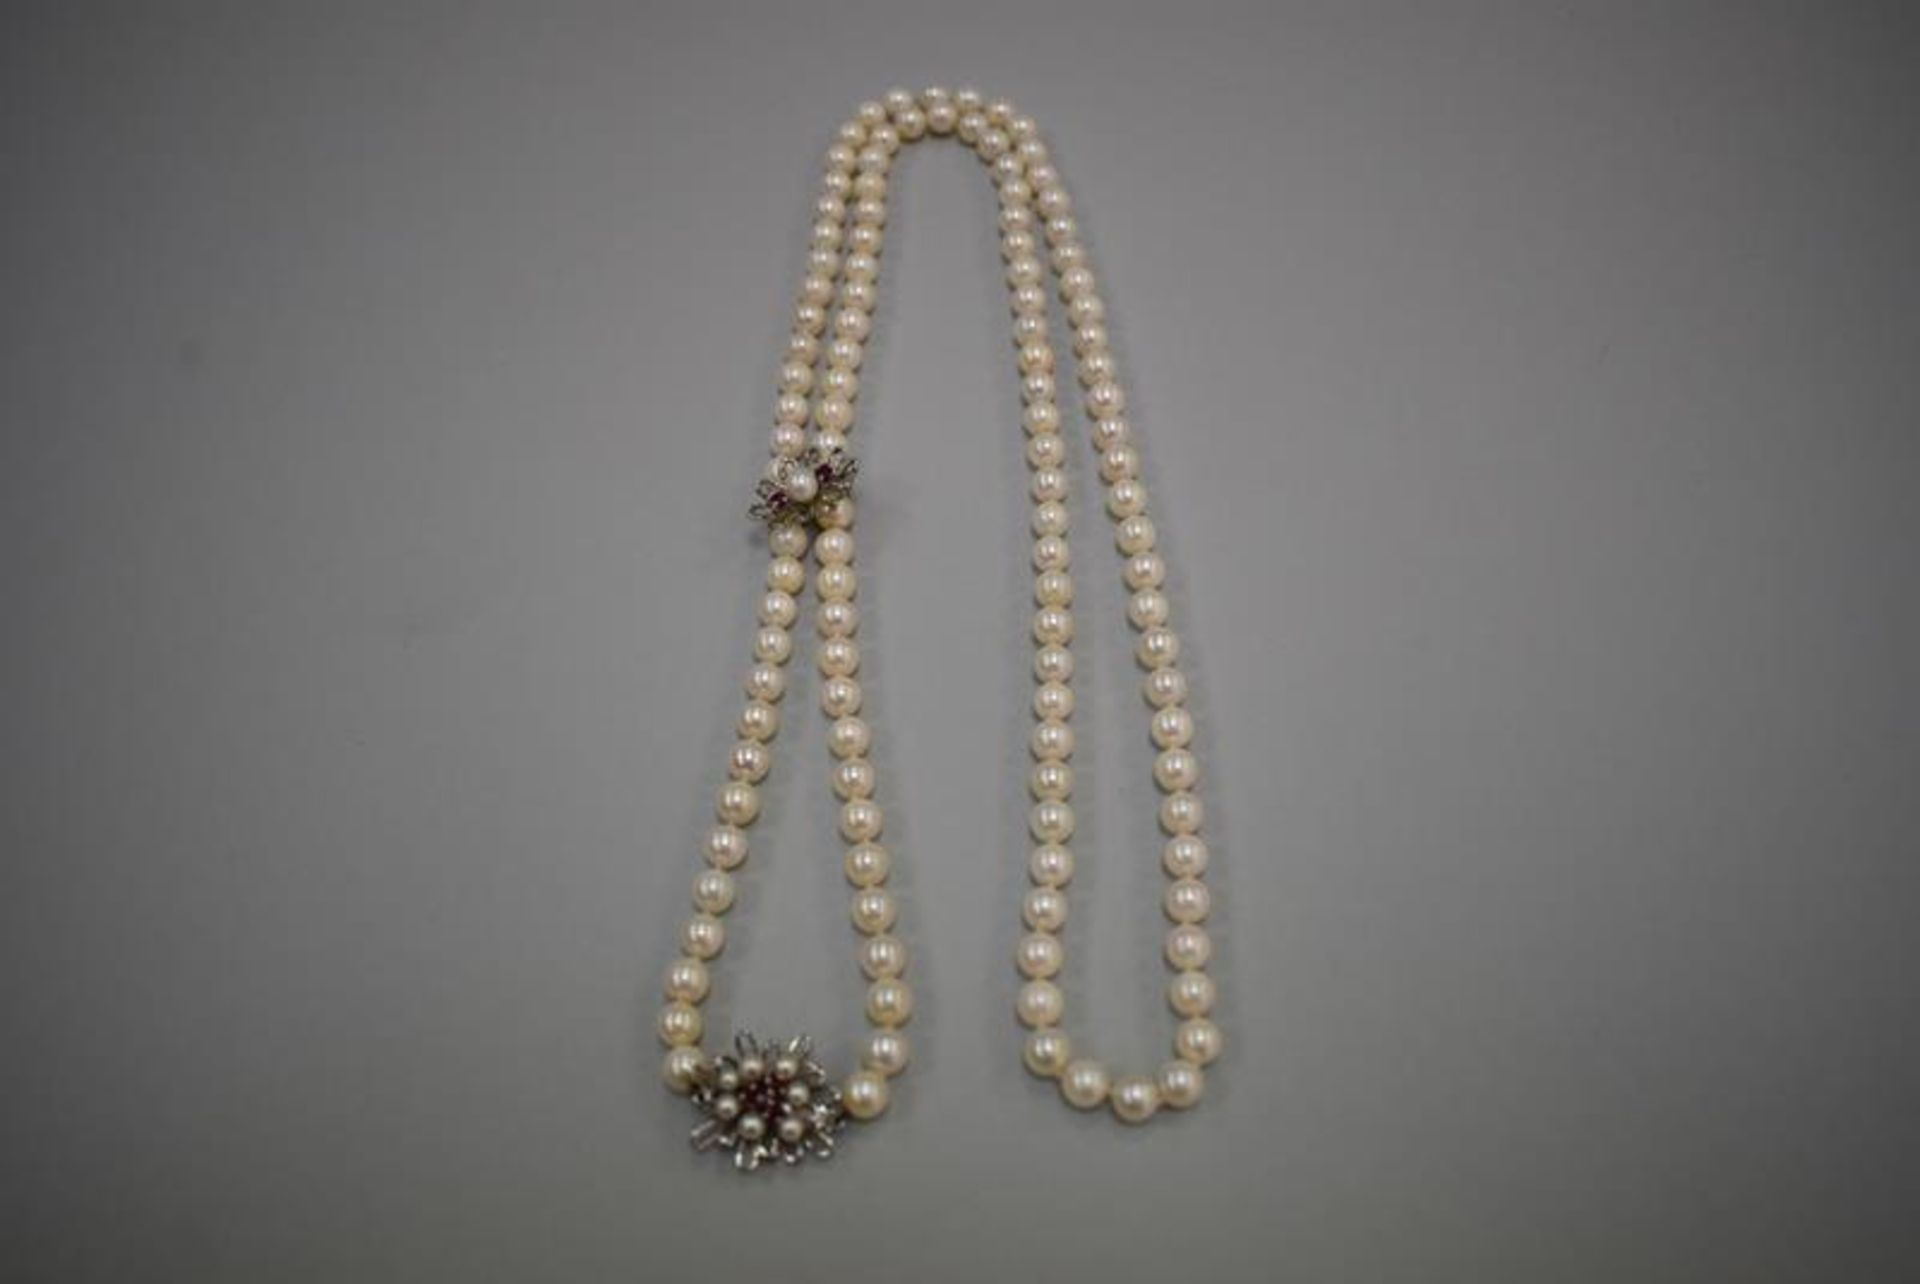 Perlenkette mit WeißgoldverschlußMindestpreis 50Bezeichnung Perlenkette mit Weißgoldverschluß - Bild 2 aus 2